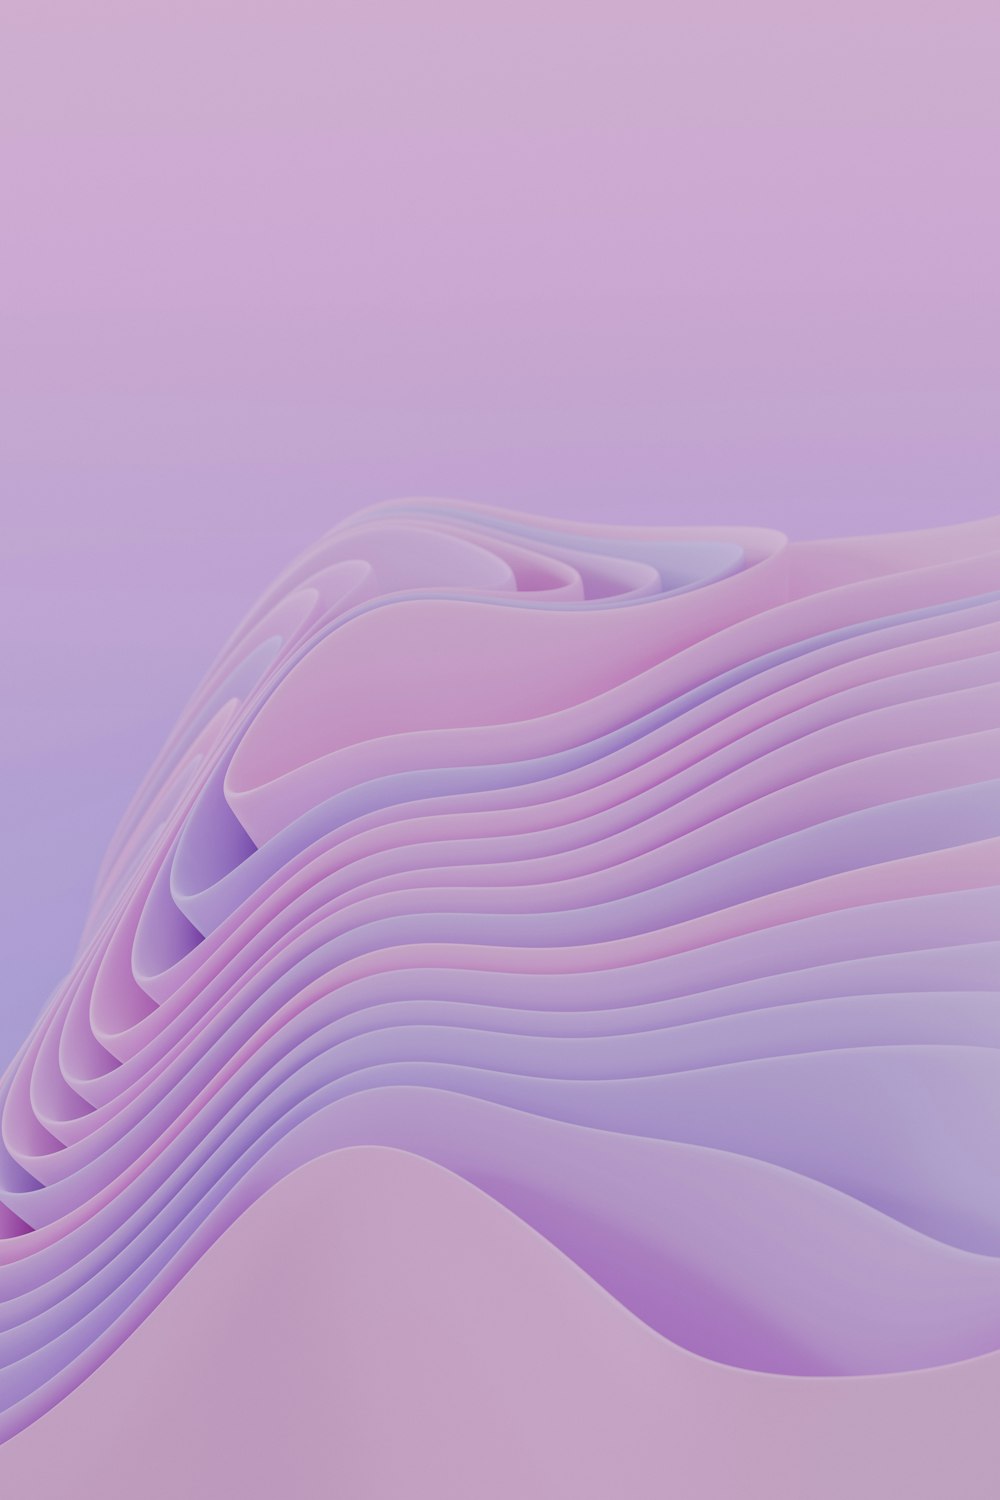 Un fondo abstracto púrpura con líneas onduladas